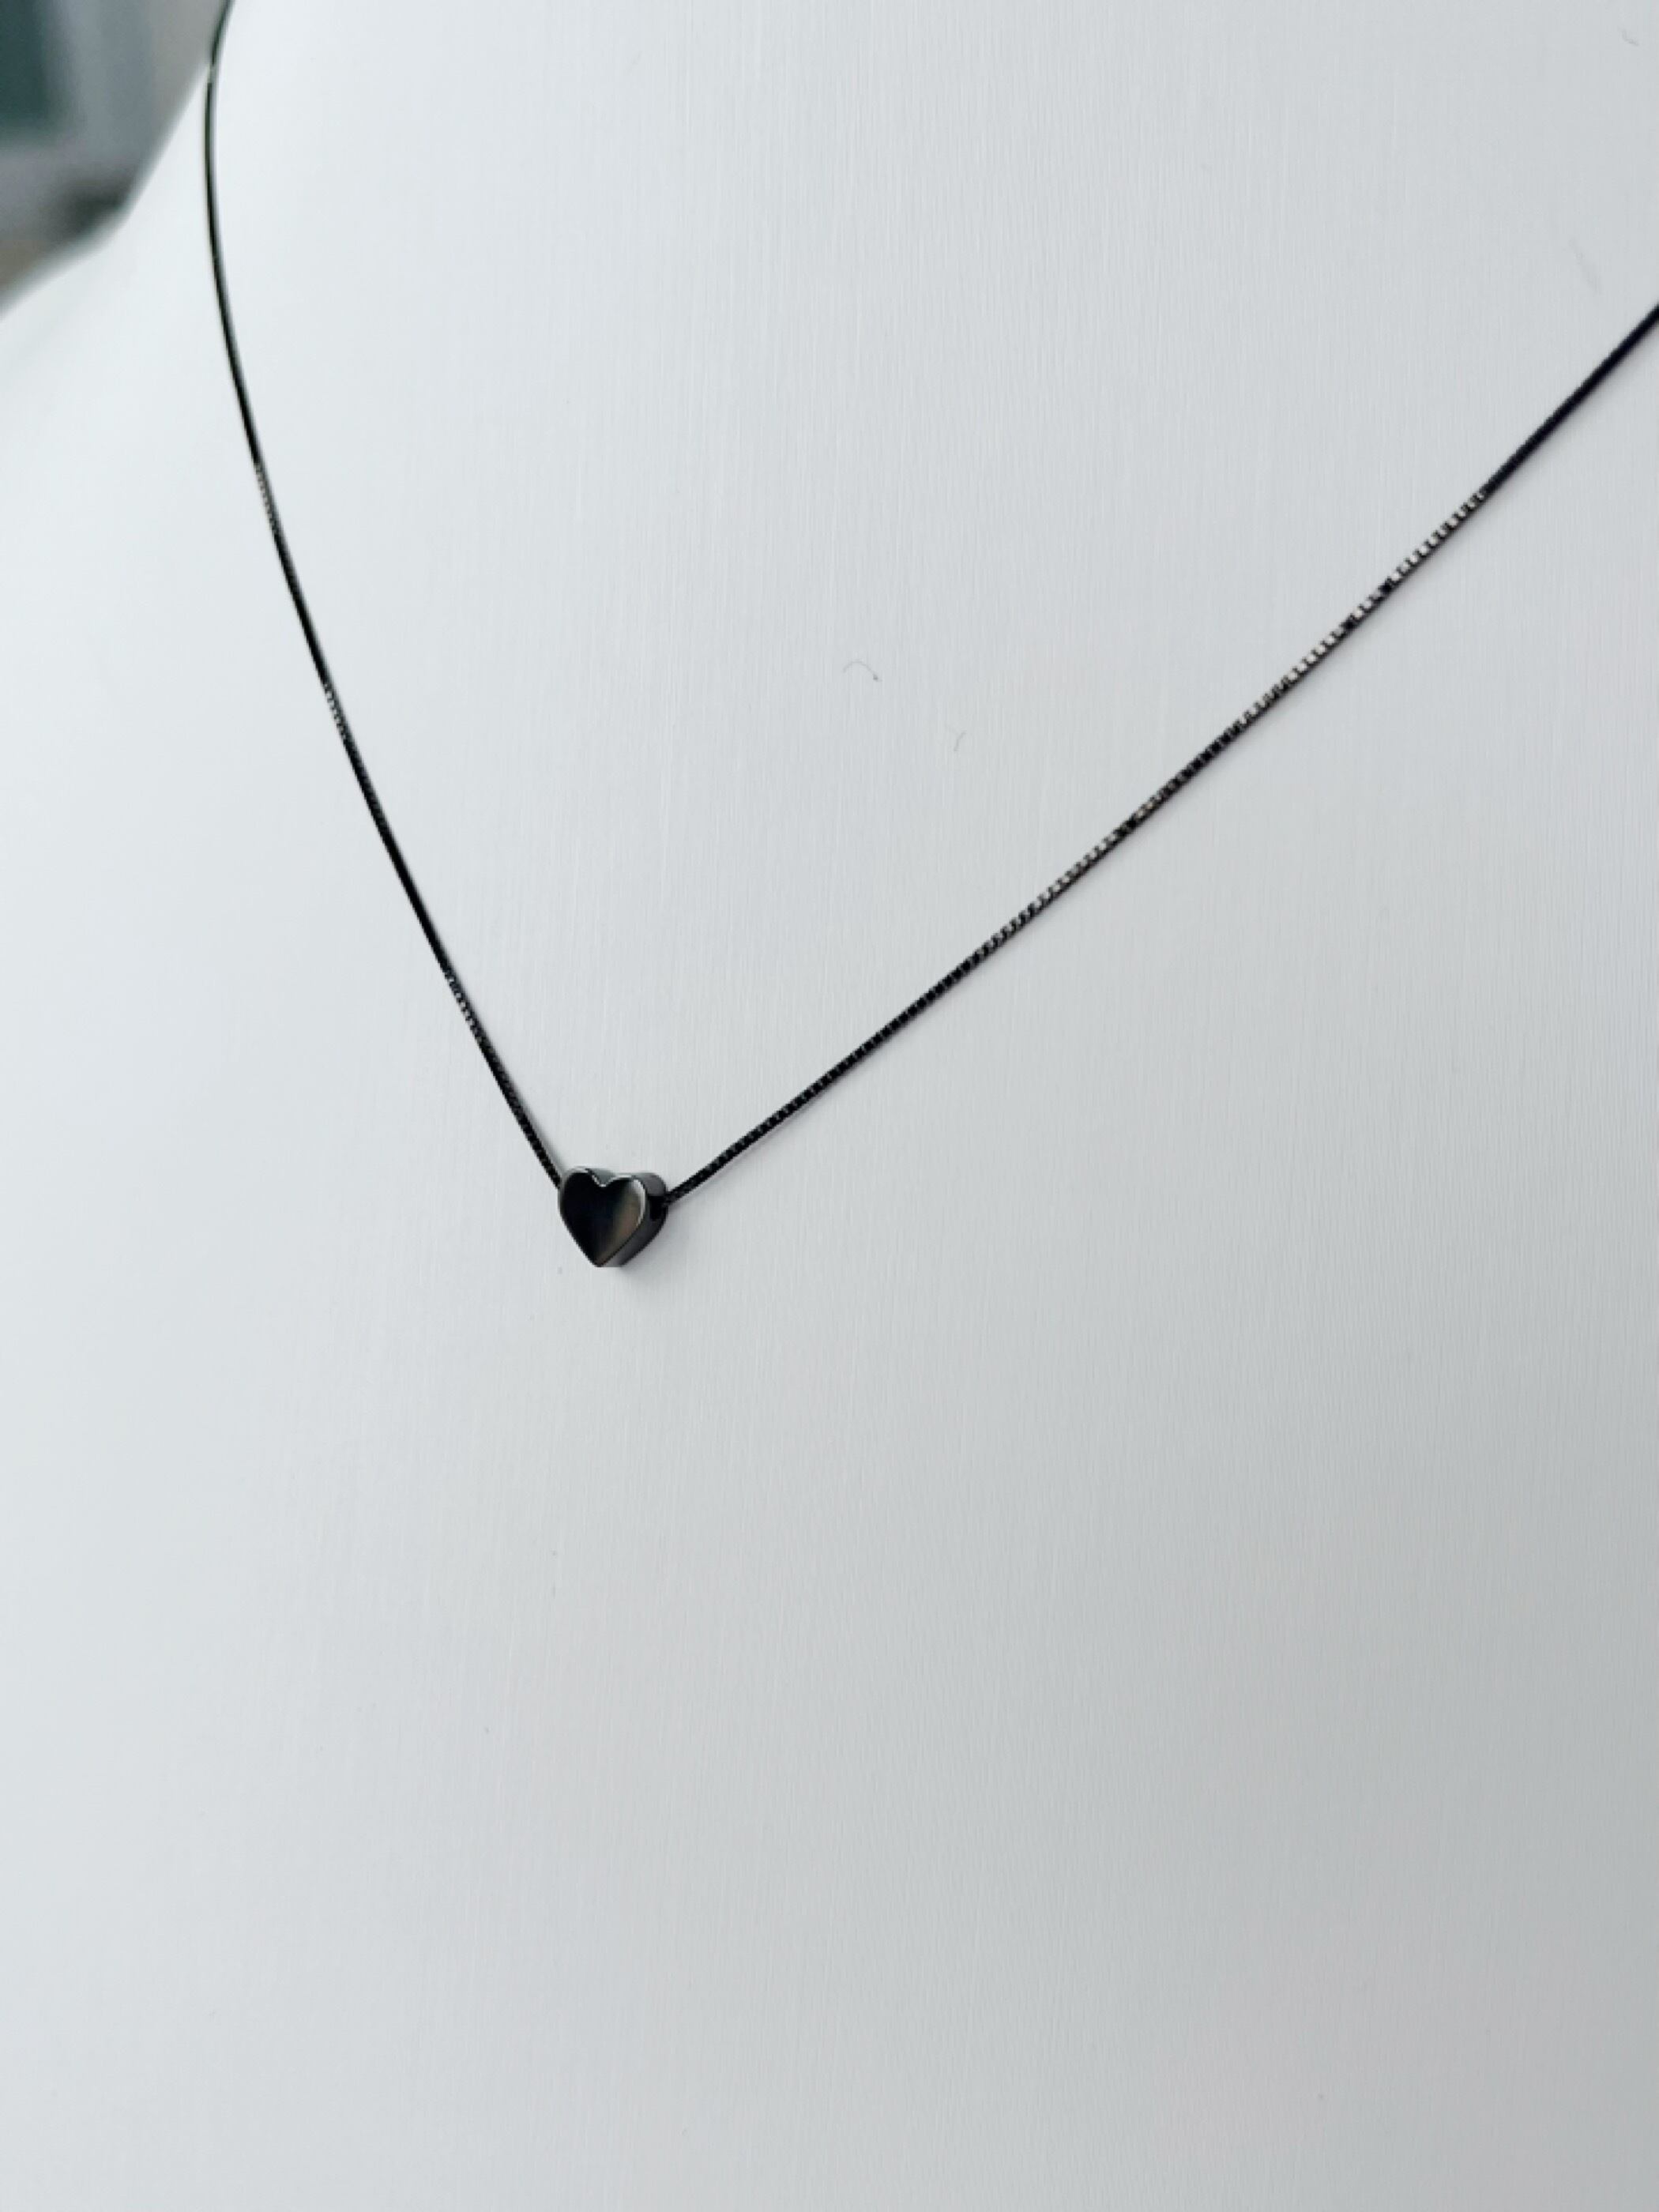 ハート 【Enasoluna】 Chic love necklace (Black) エナソルーナ ハート ネックレス モチーフ アクセサリー ジュエリー jewelry Accessory レディース シルバー925 K10YG 11962179 KOKO